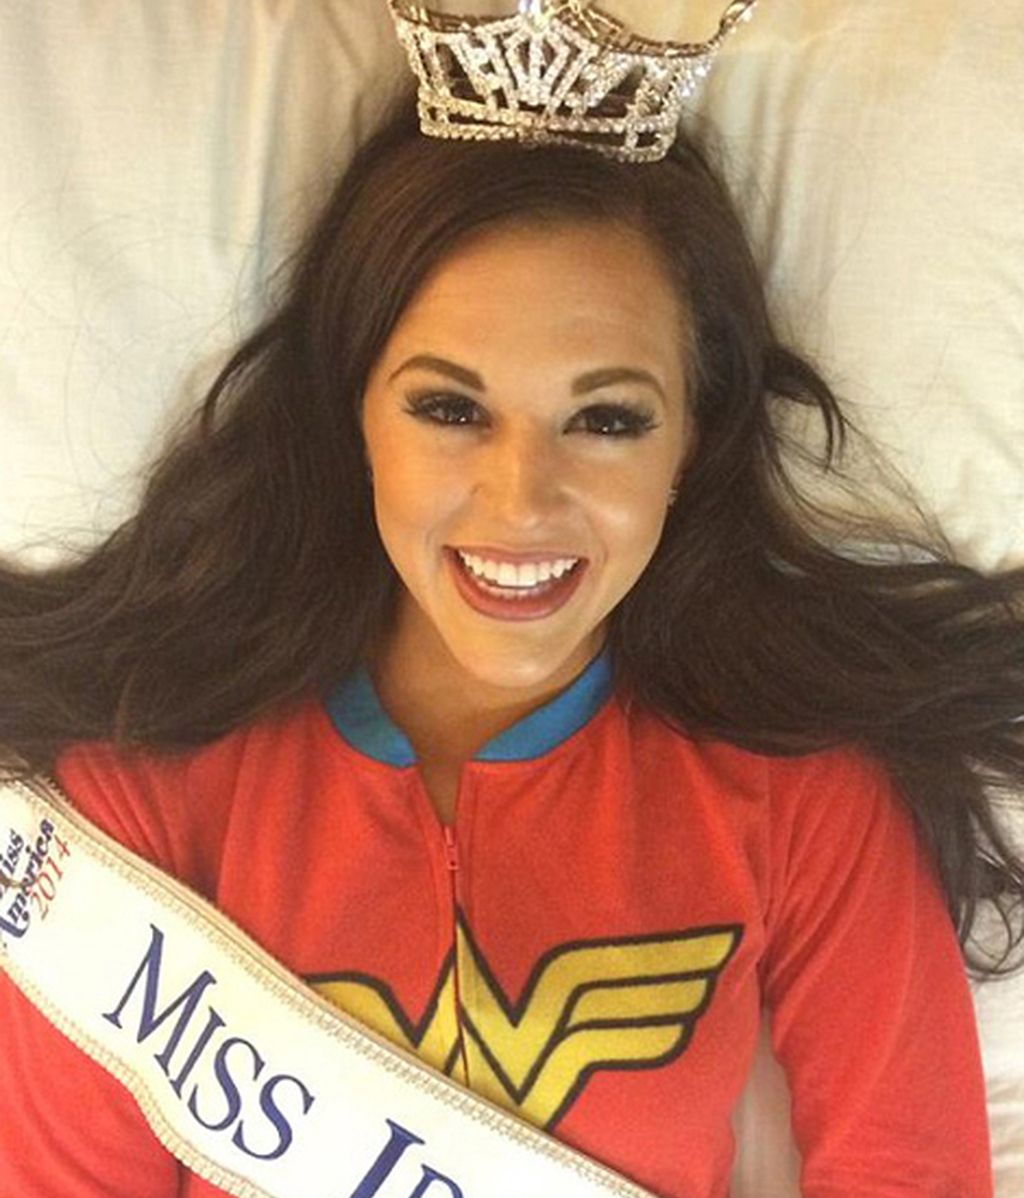 Gana la corona de Miss Idaho desfilando con una bomba de insulina